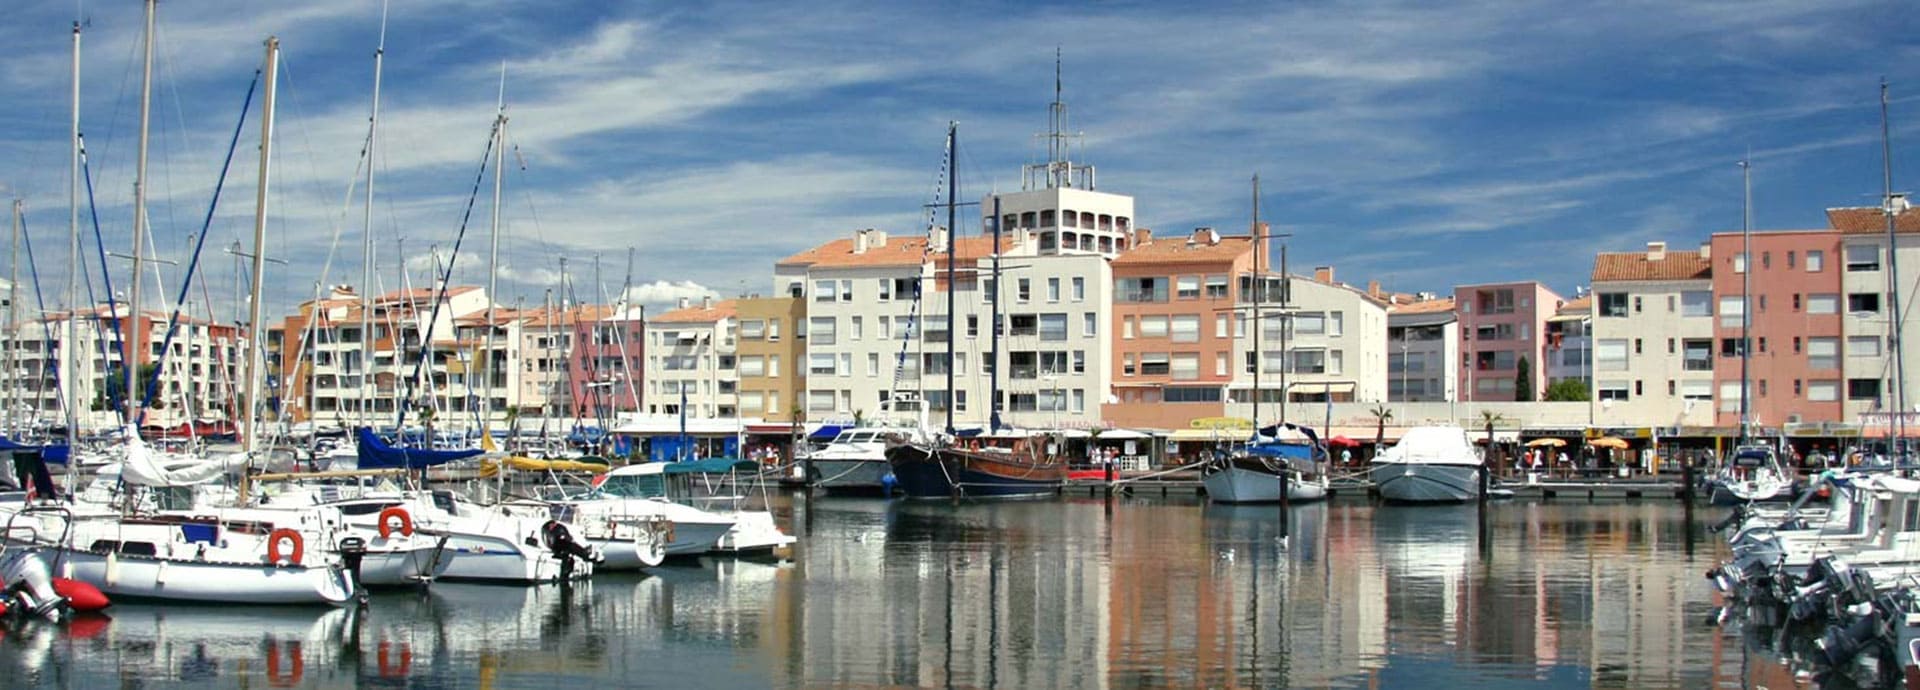 Der Hafen von Cap d'Agde, Badeort im Département Hérault